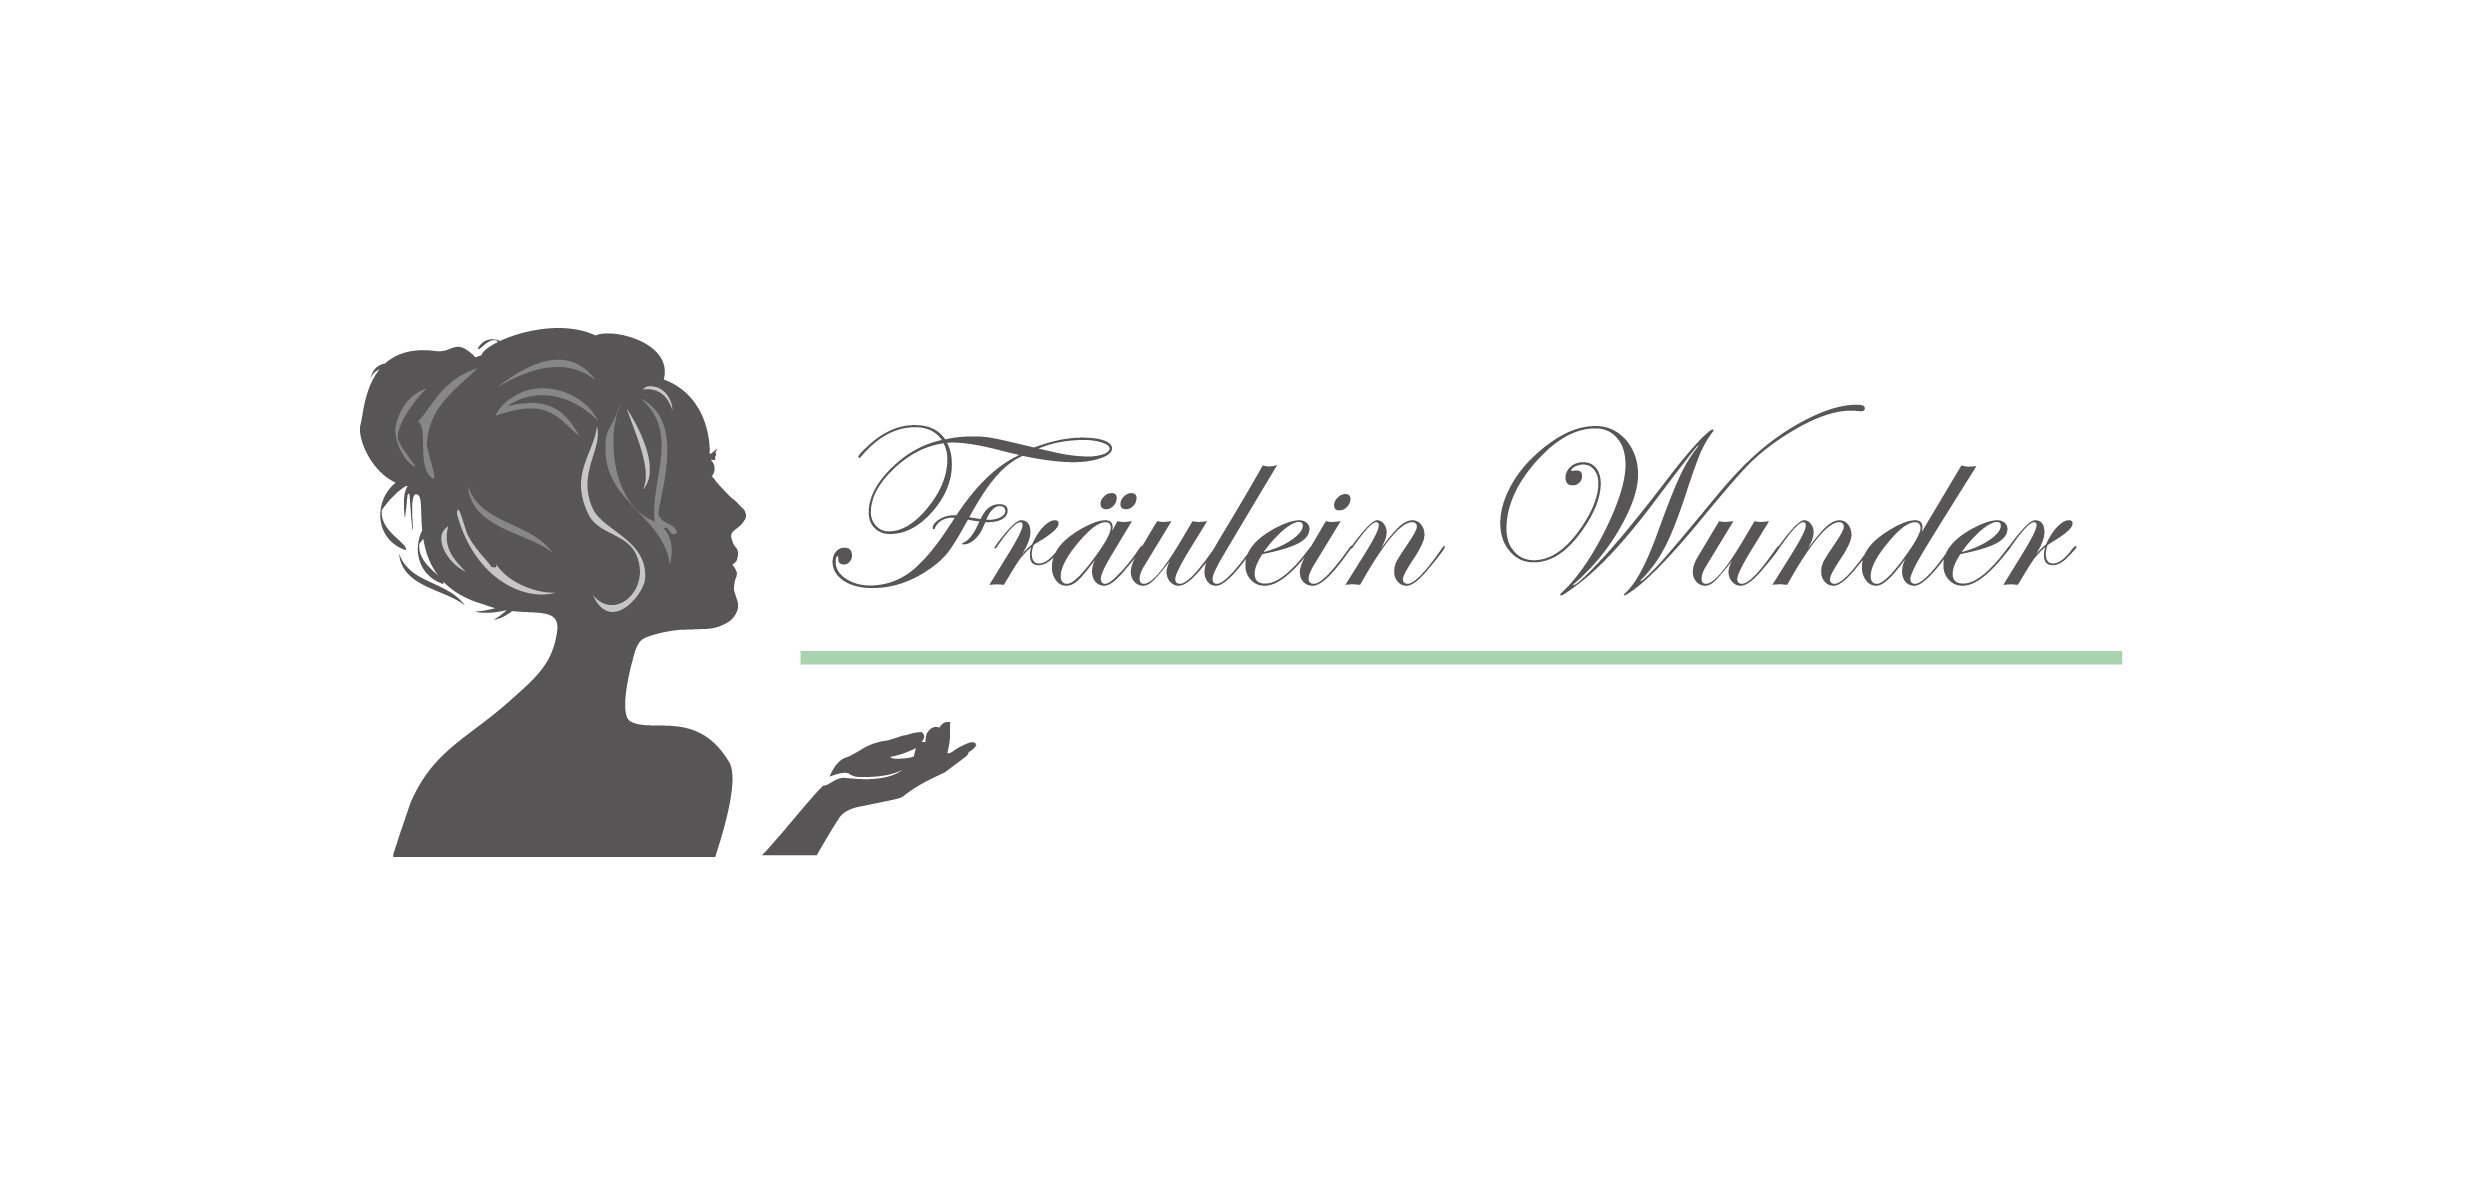 Café Fräulein Wunder Braunschweig - Webdesign